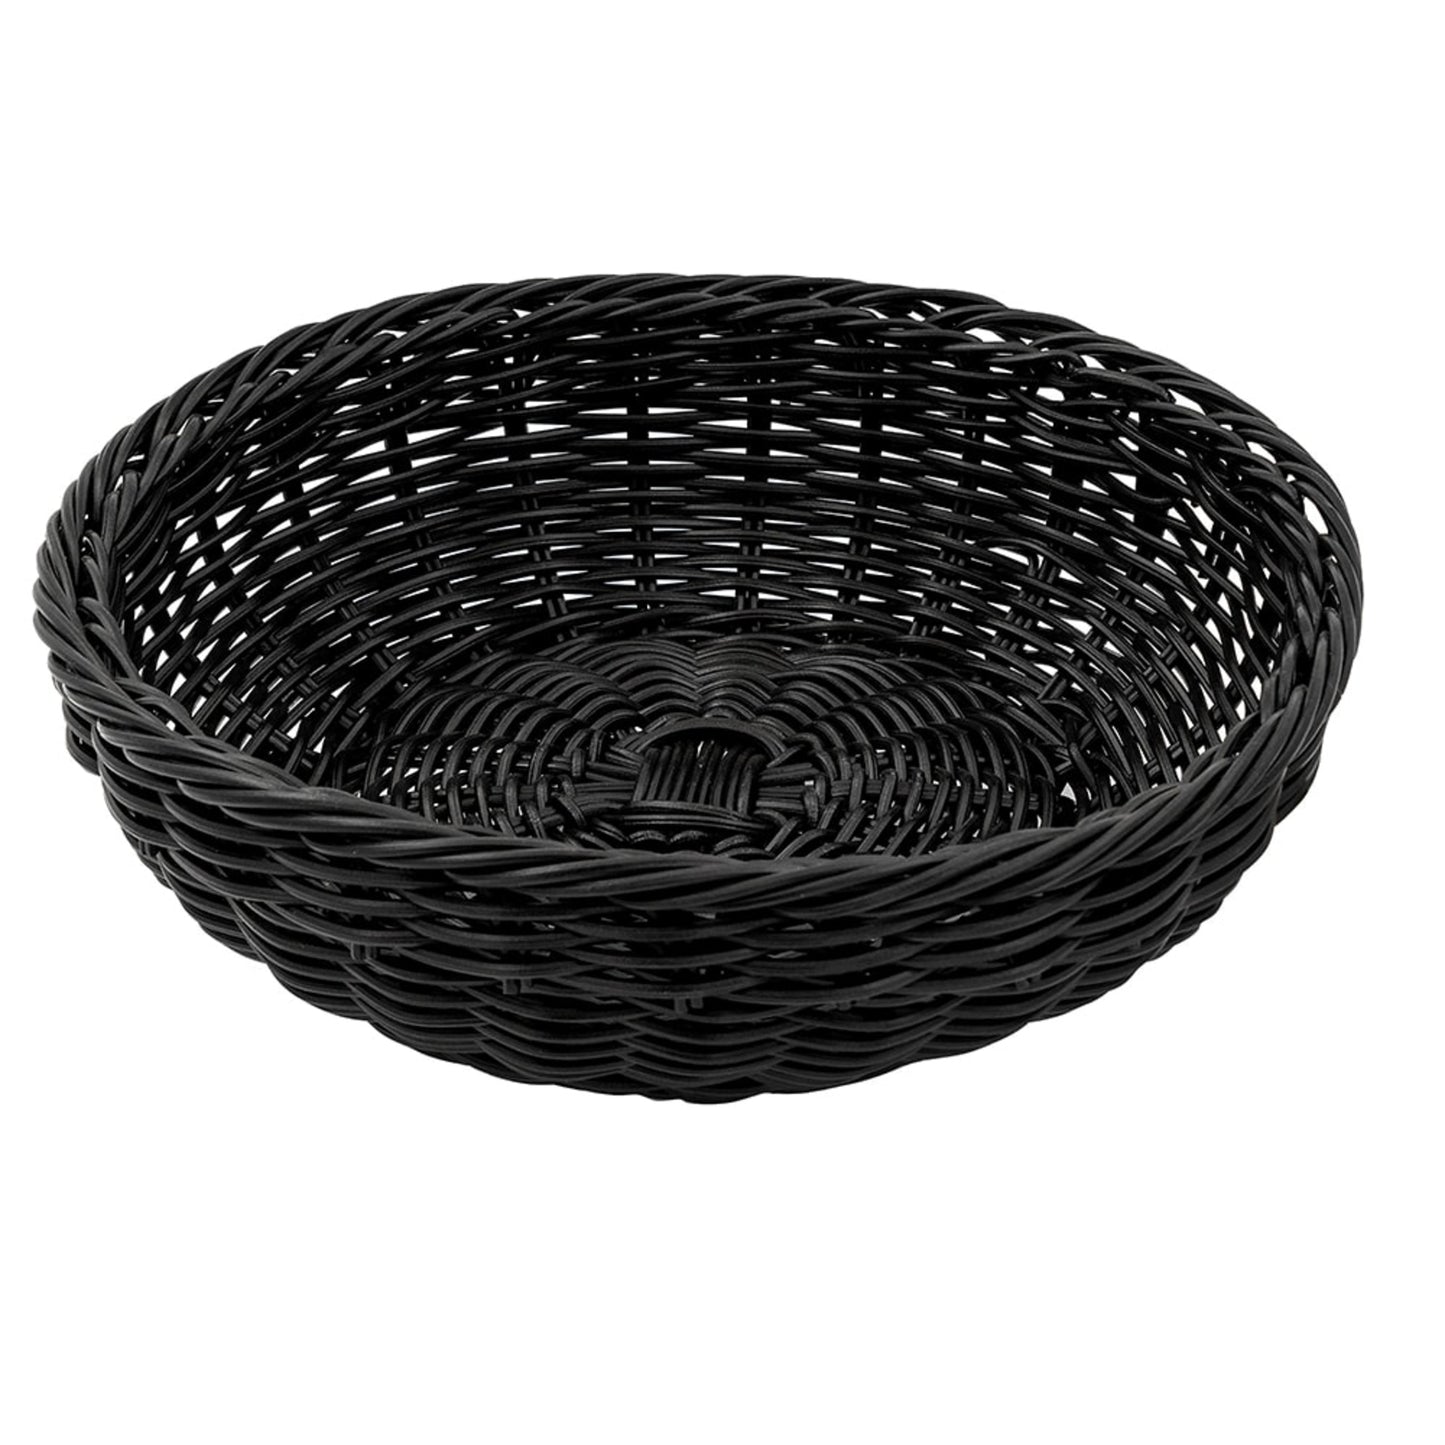 11.5" Round Basket